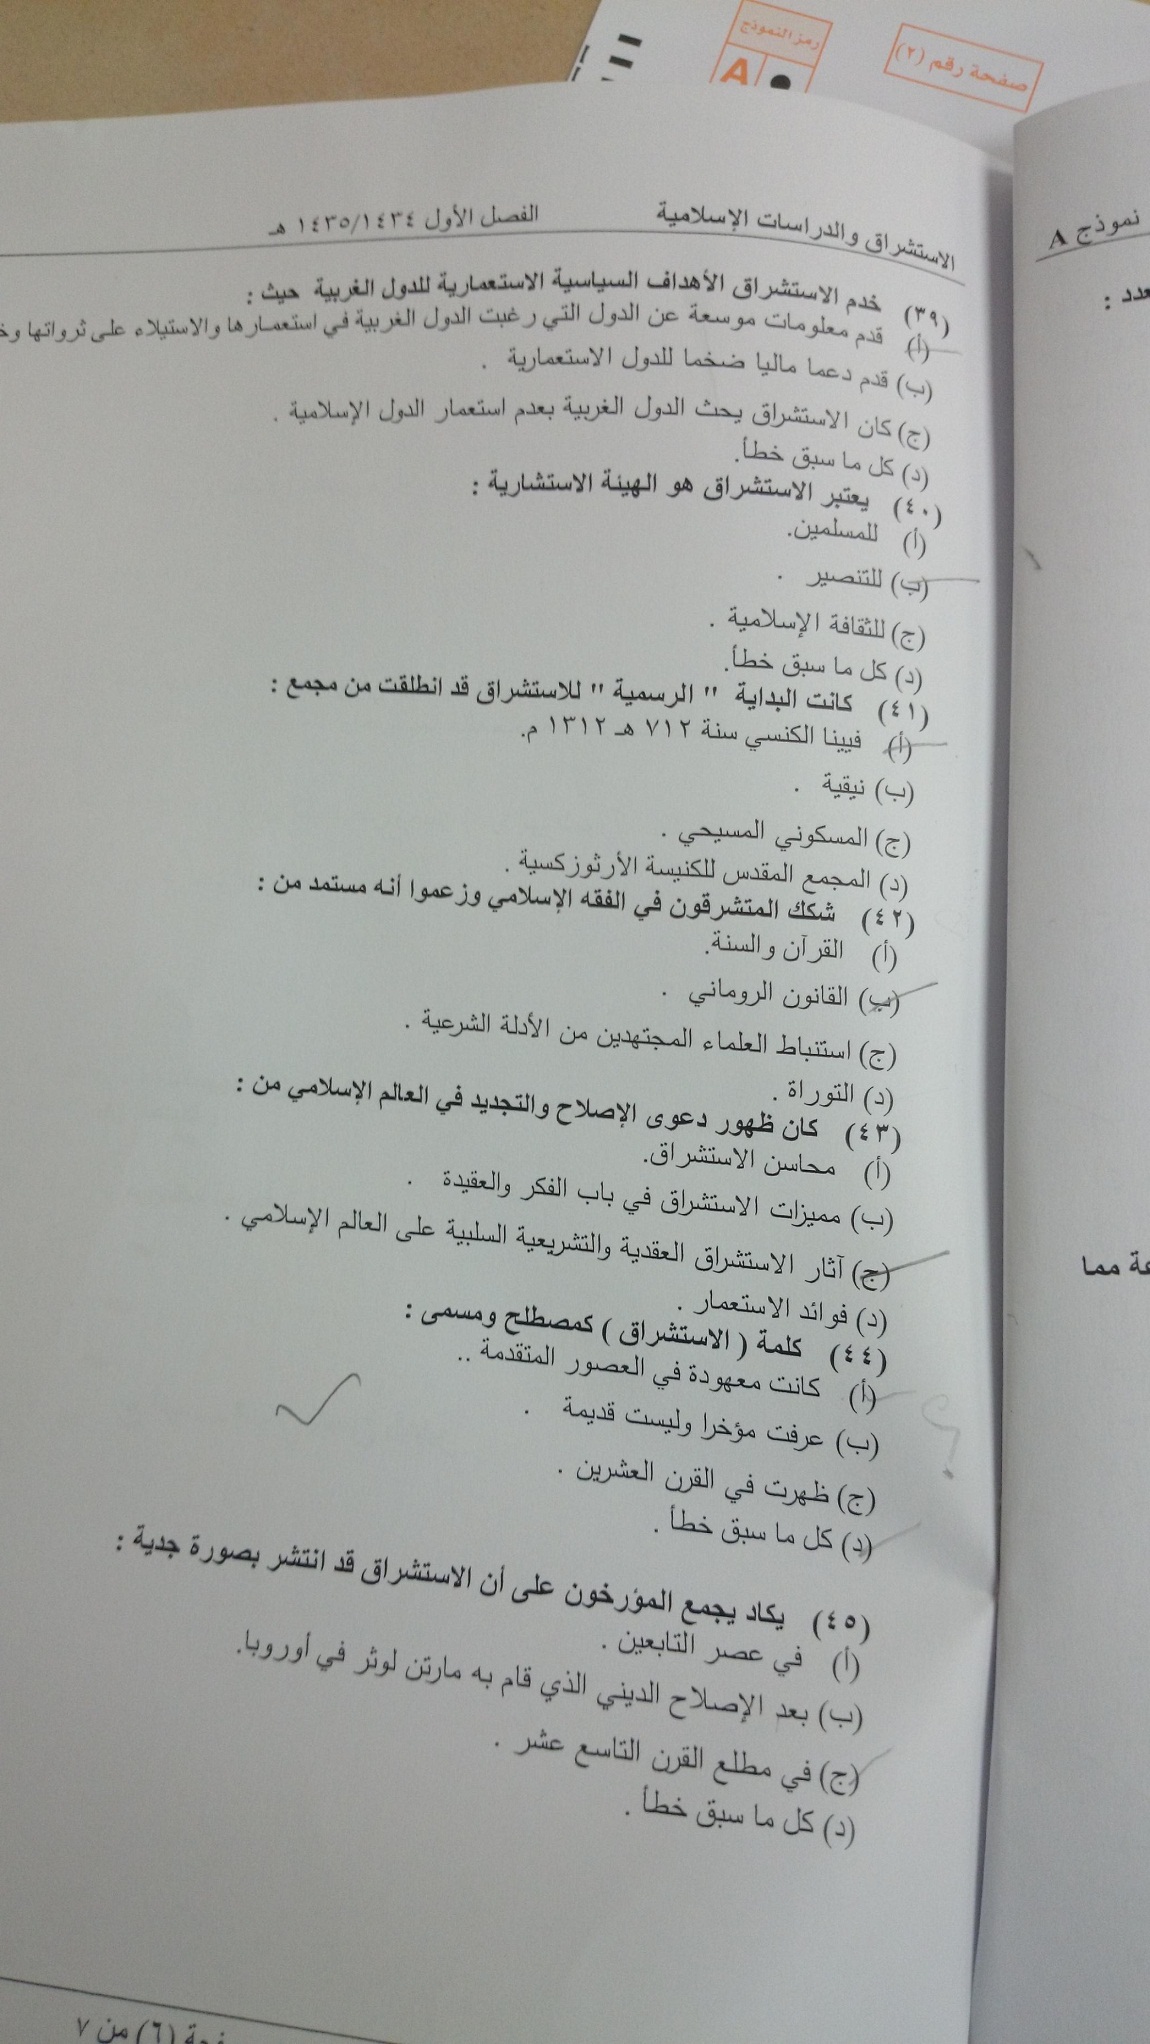 اسئلة اختبار مادة الاستشراق والدراسات الإسلامية الفصل الدراسي الأول 1435هـ نموذج (a)